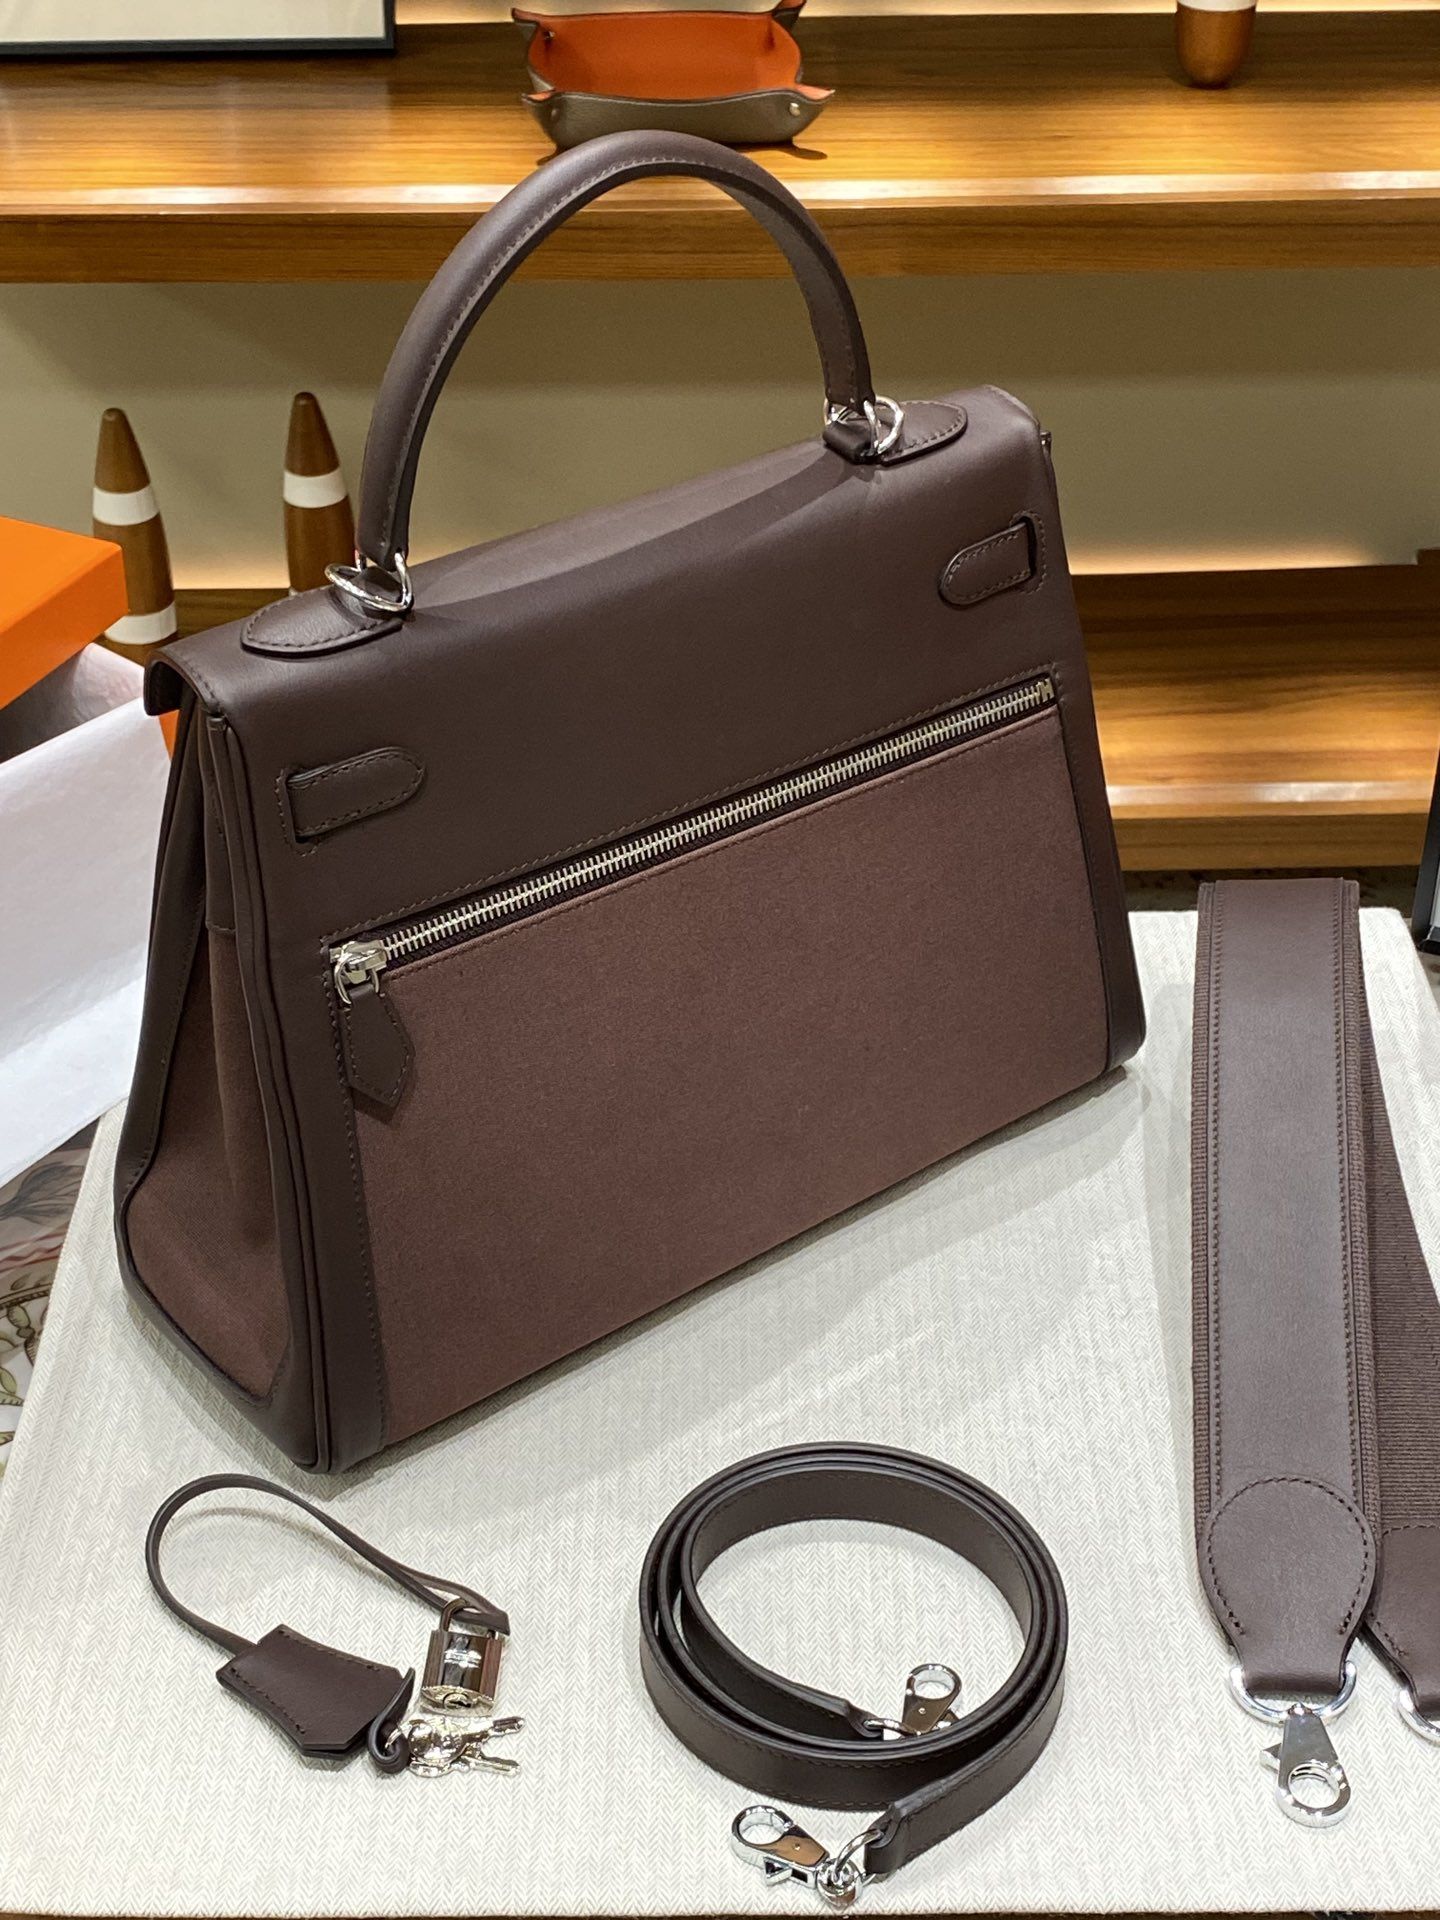 Unisex-Luxus-Ledertaschen, Designer-Handtaschen, mehrere Schichten, Doppelgürtel, vielseitige Umhängetaschen, Swift-Leder-Business-Casual-Taschen, individuell anpassbar in vielen Farben